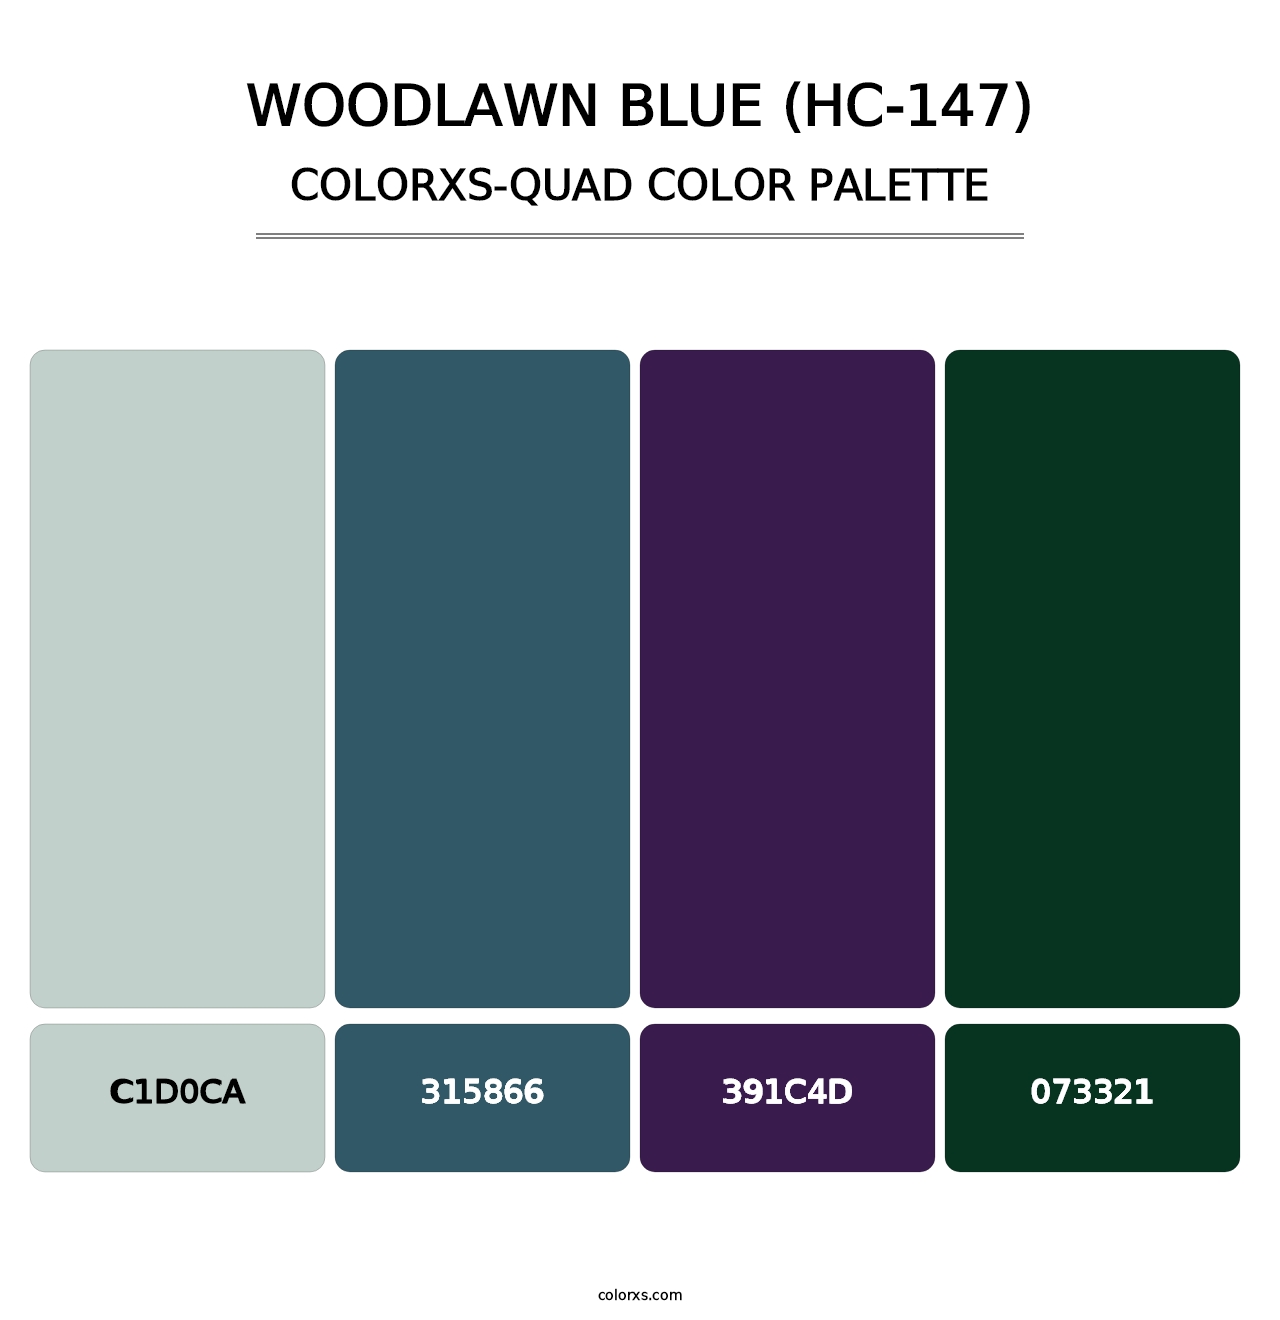 Woodlawn Blue (HC-147) - Colorxs Quad Palette